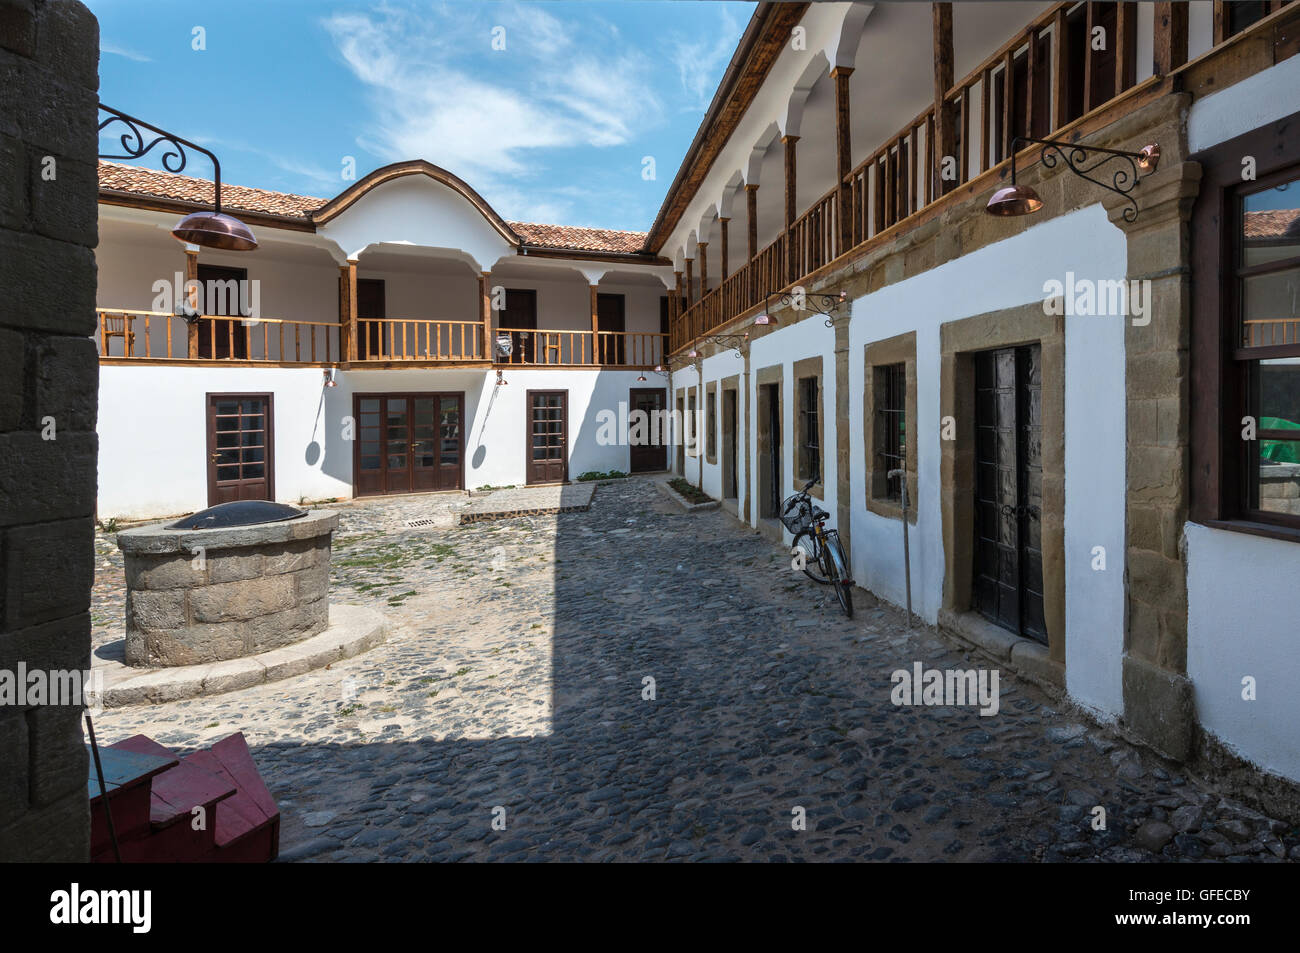 Das neu restaurierte Hani ich Elbasanit, osmanische Ära Gasthaus im Stadtteil Basar. Korca, süd-östlichen Albanien. Stockfoto